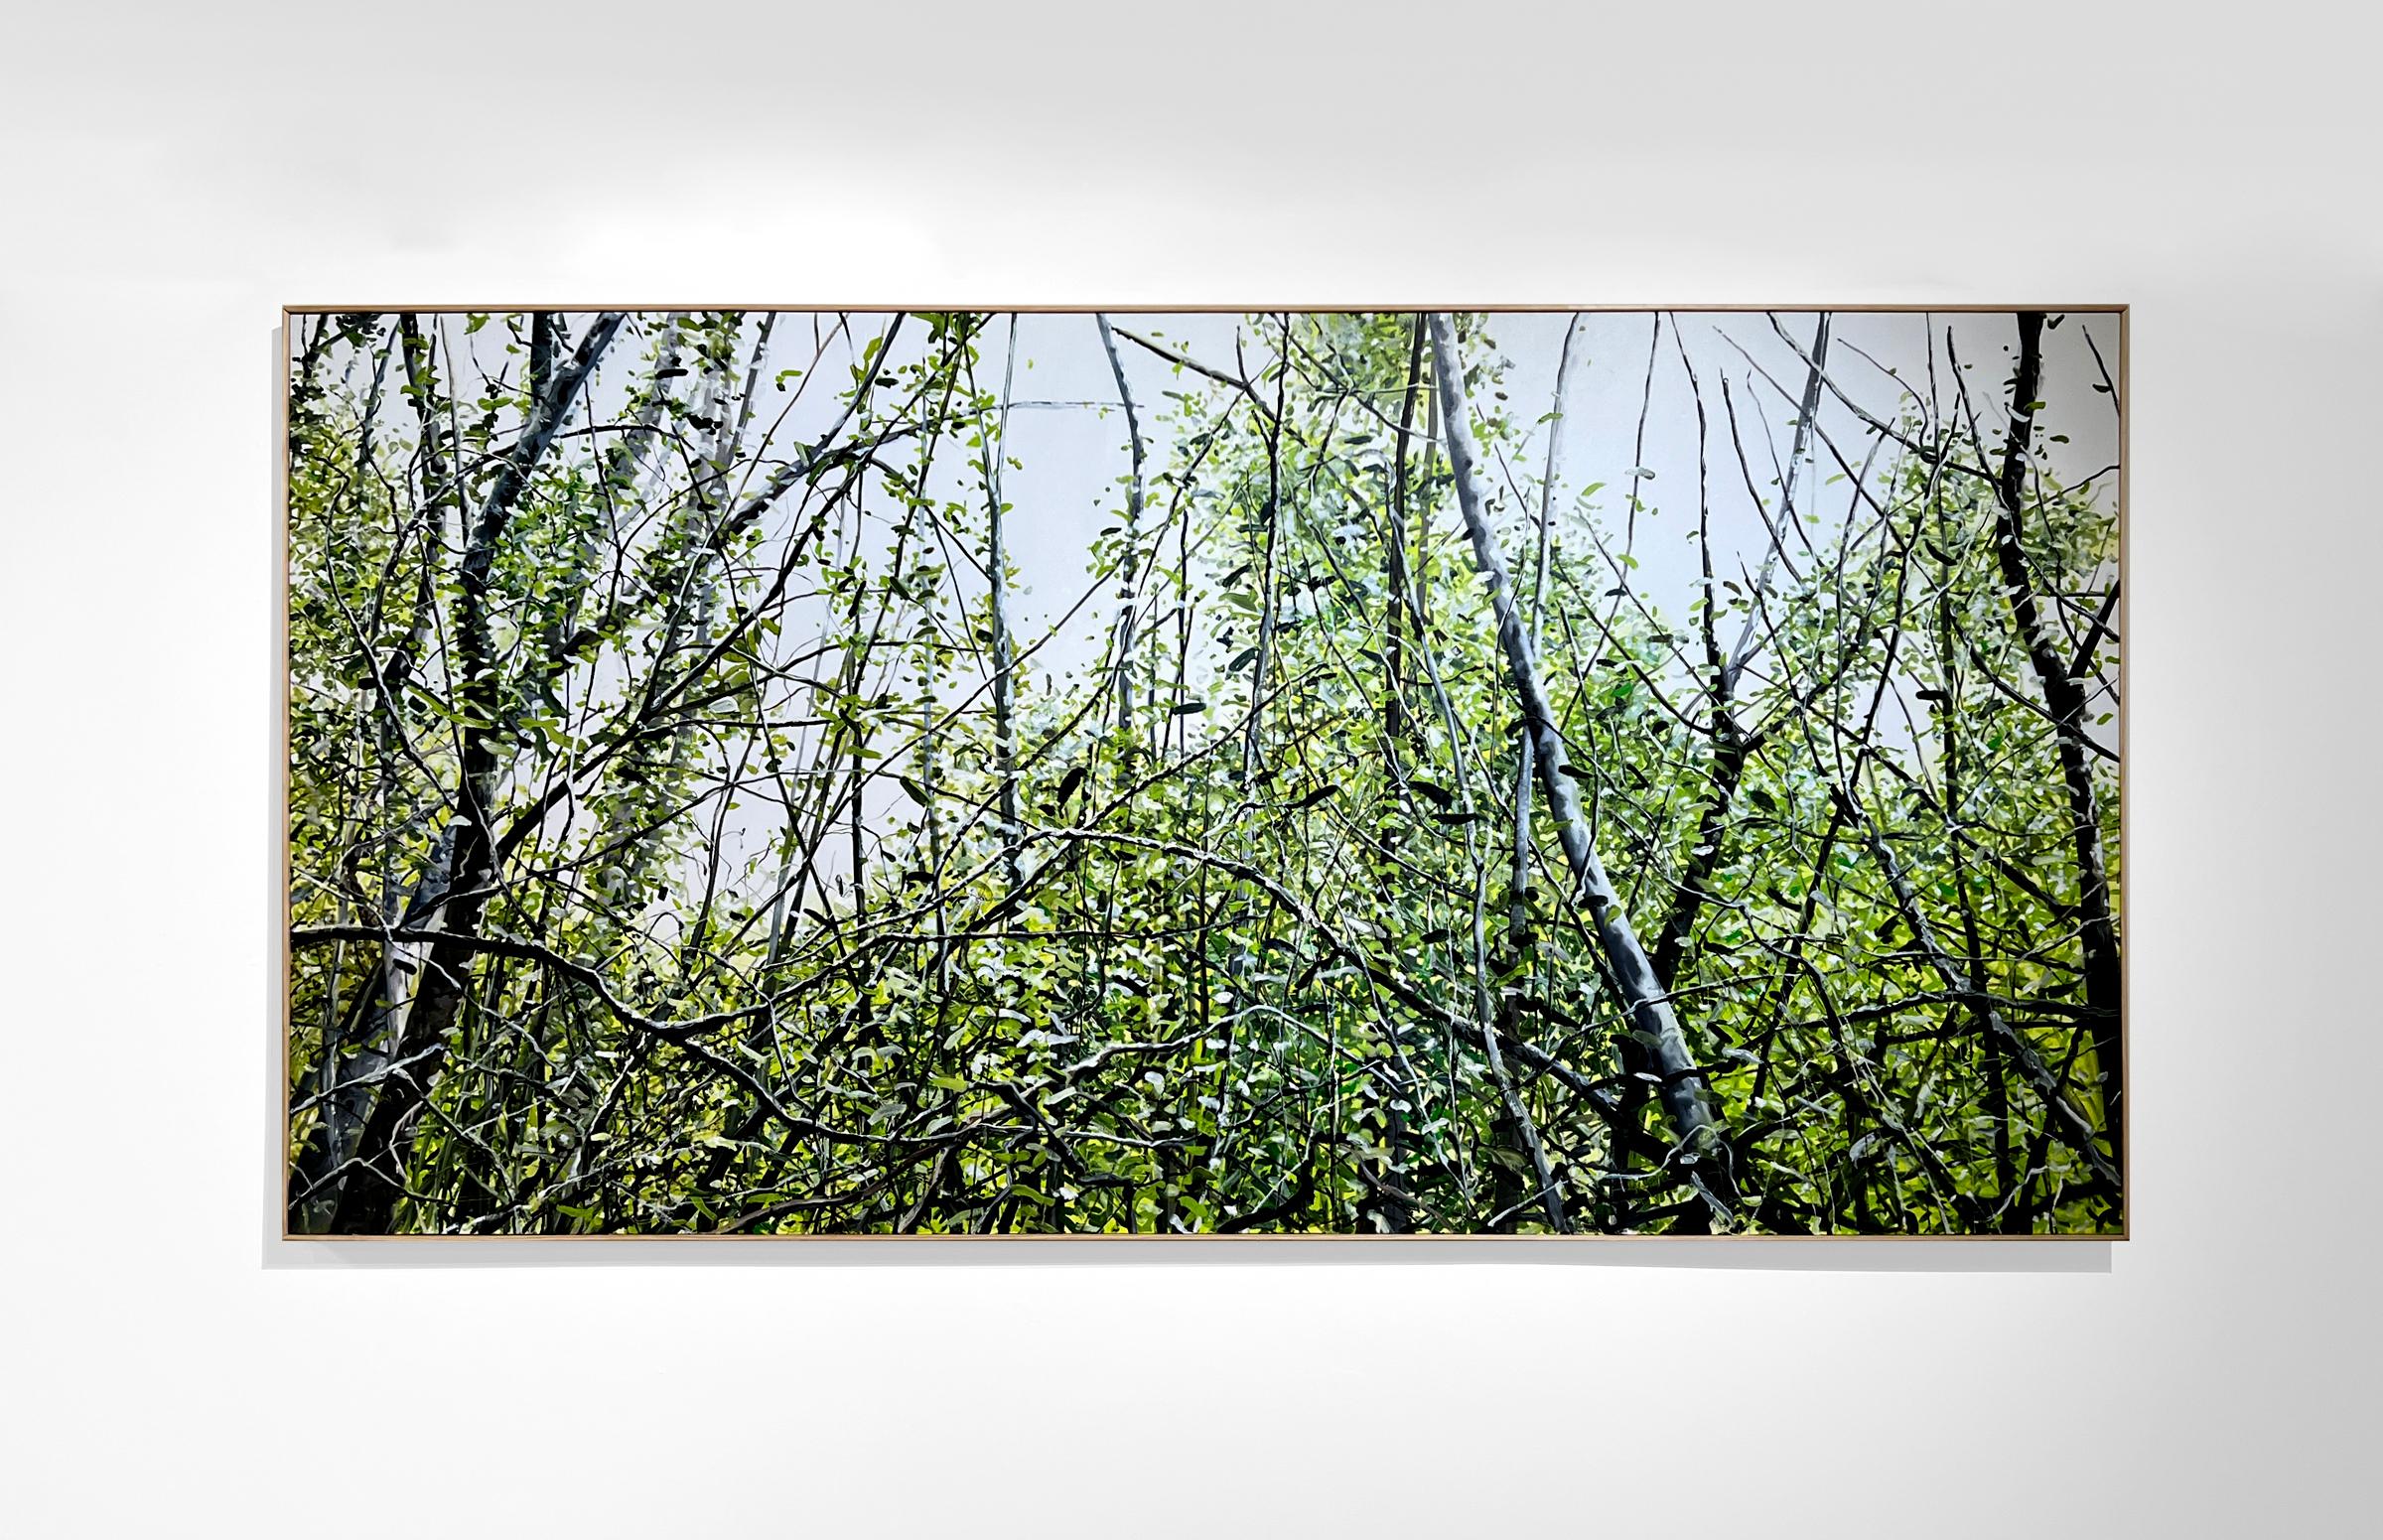 LONG JOURNEY - Zeitgenössischer Realismus / Üppige grüne Landschaft – Painting von Eric Zener